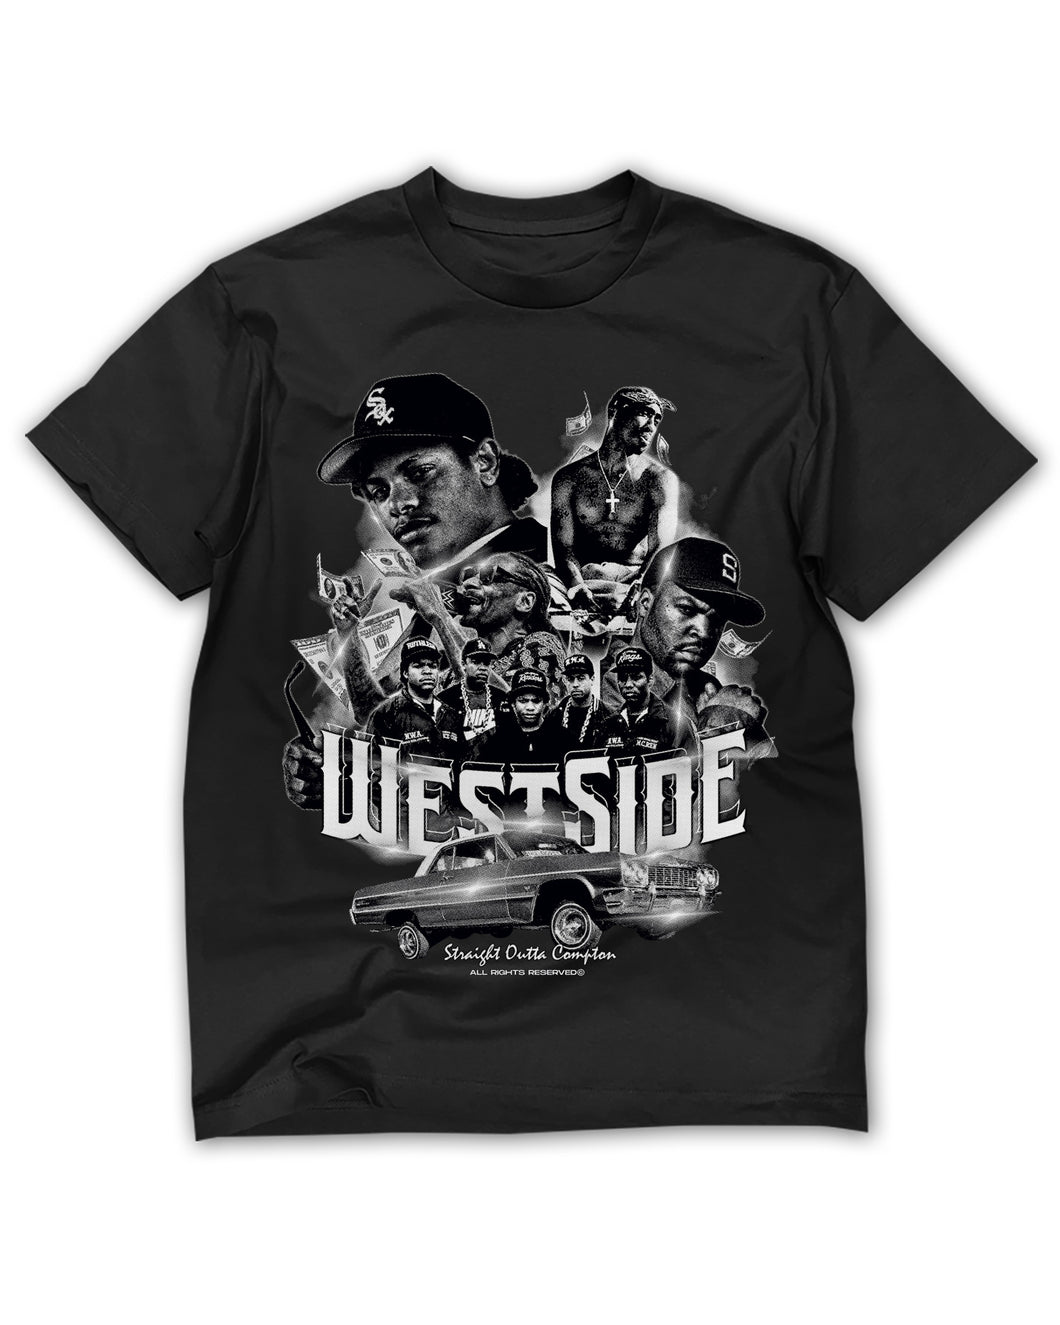 Westside Rappers Tee - Black